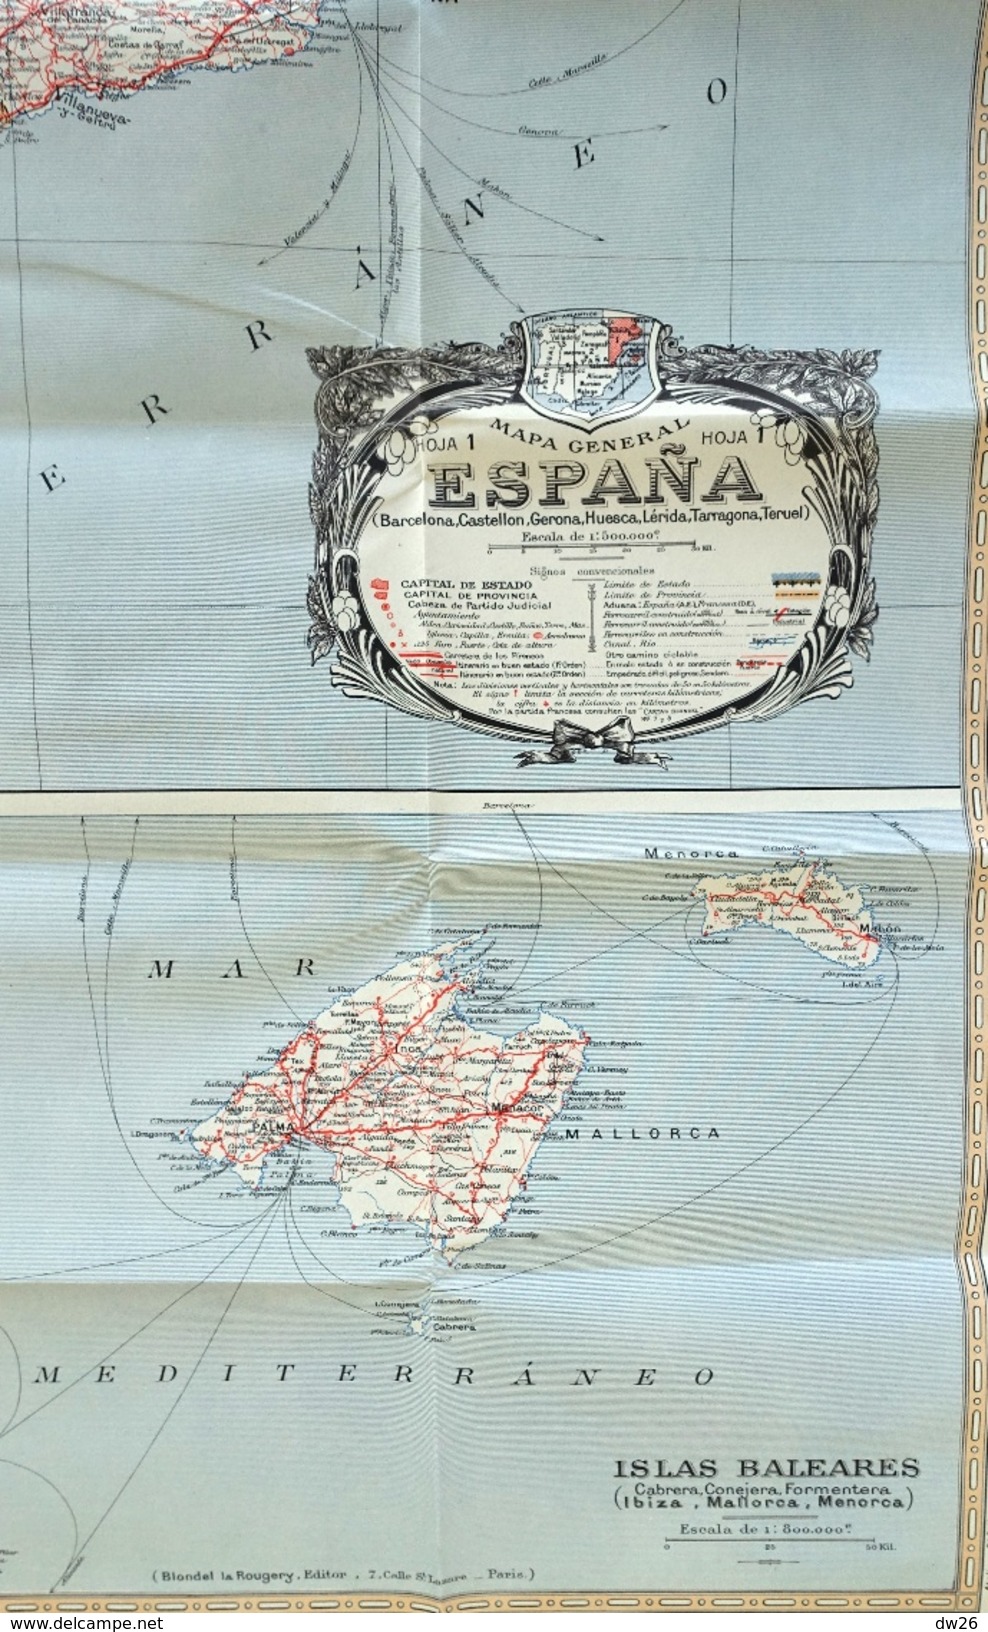 Mapa Turista Espana Y Portugal (Barcelona-Valencia-Islas Baléares) - Hoja 1 - Ed. Blondel 1938 (4 Colores) - Callejero